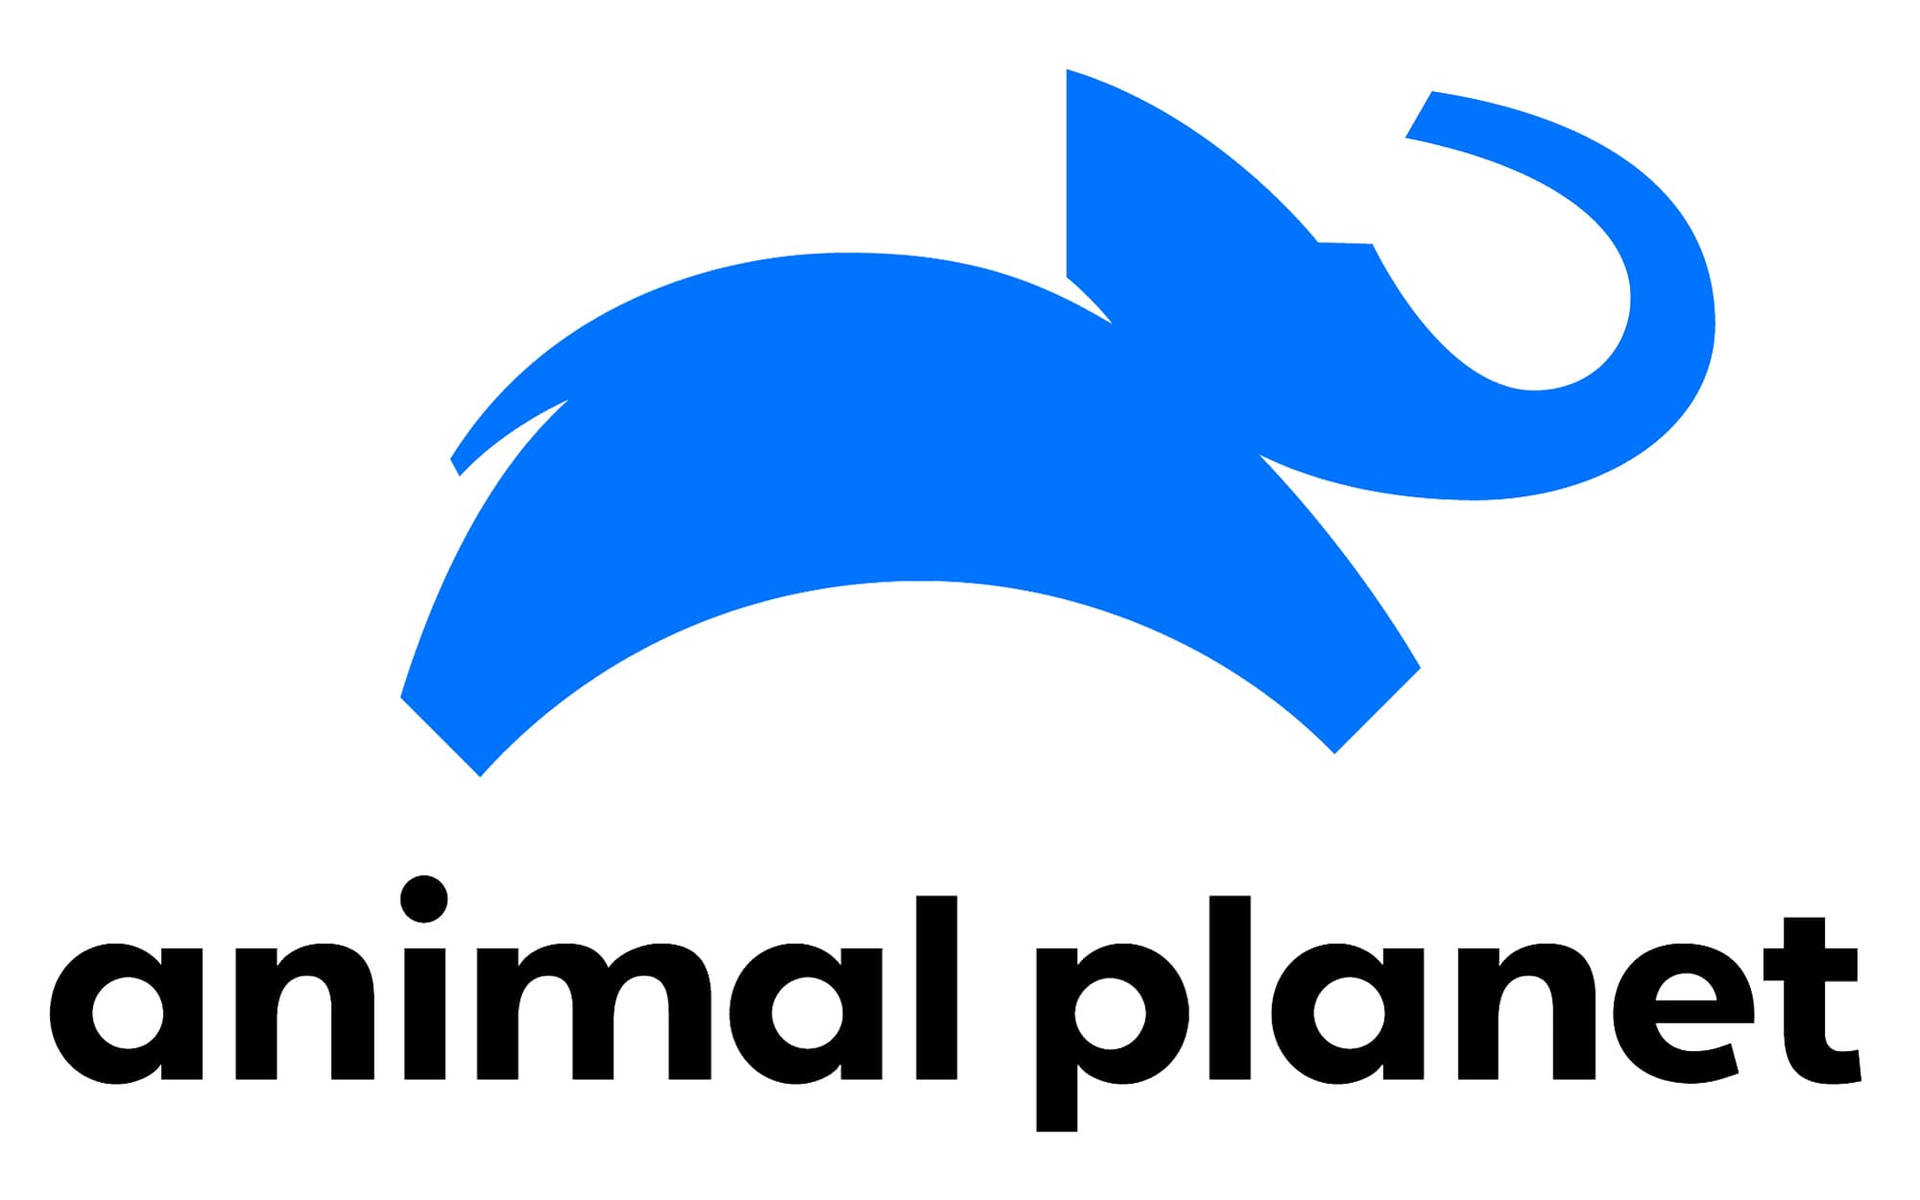 Animal Planet Blue Elephant Logo Background